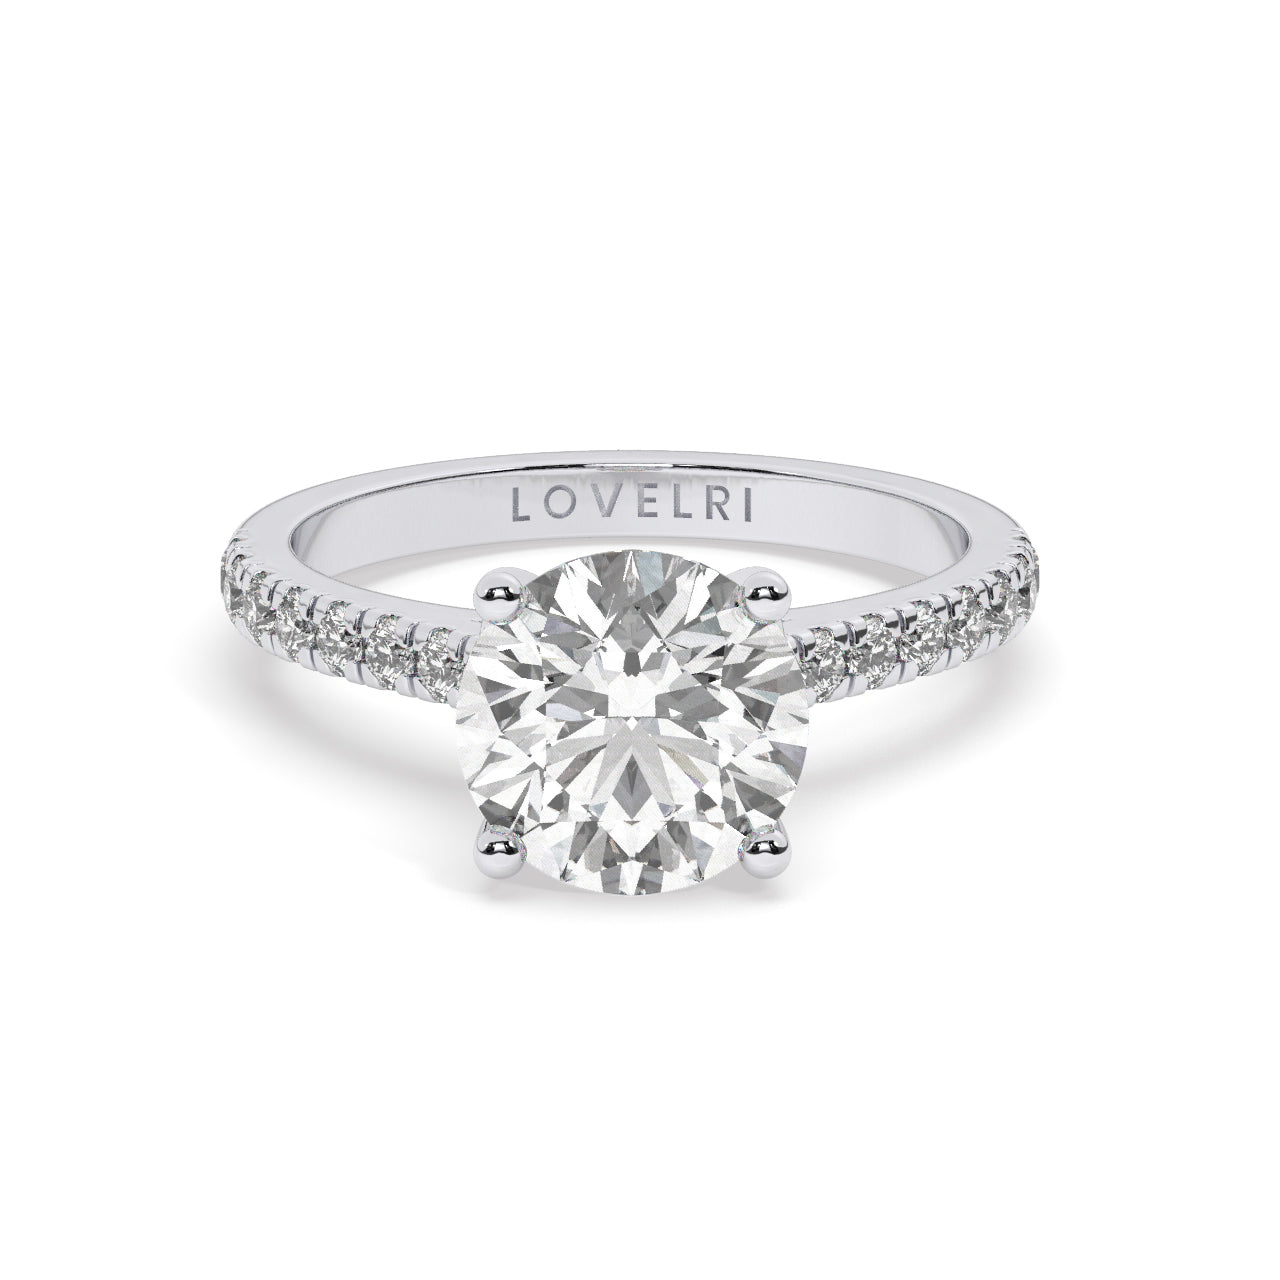 HK Ring - Lovelri Lab Diamond & Moissanite Engagement Rings